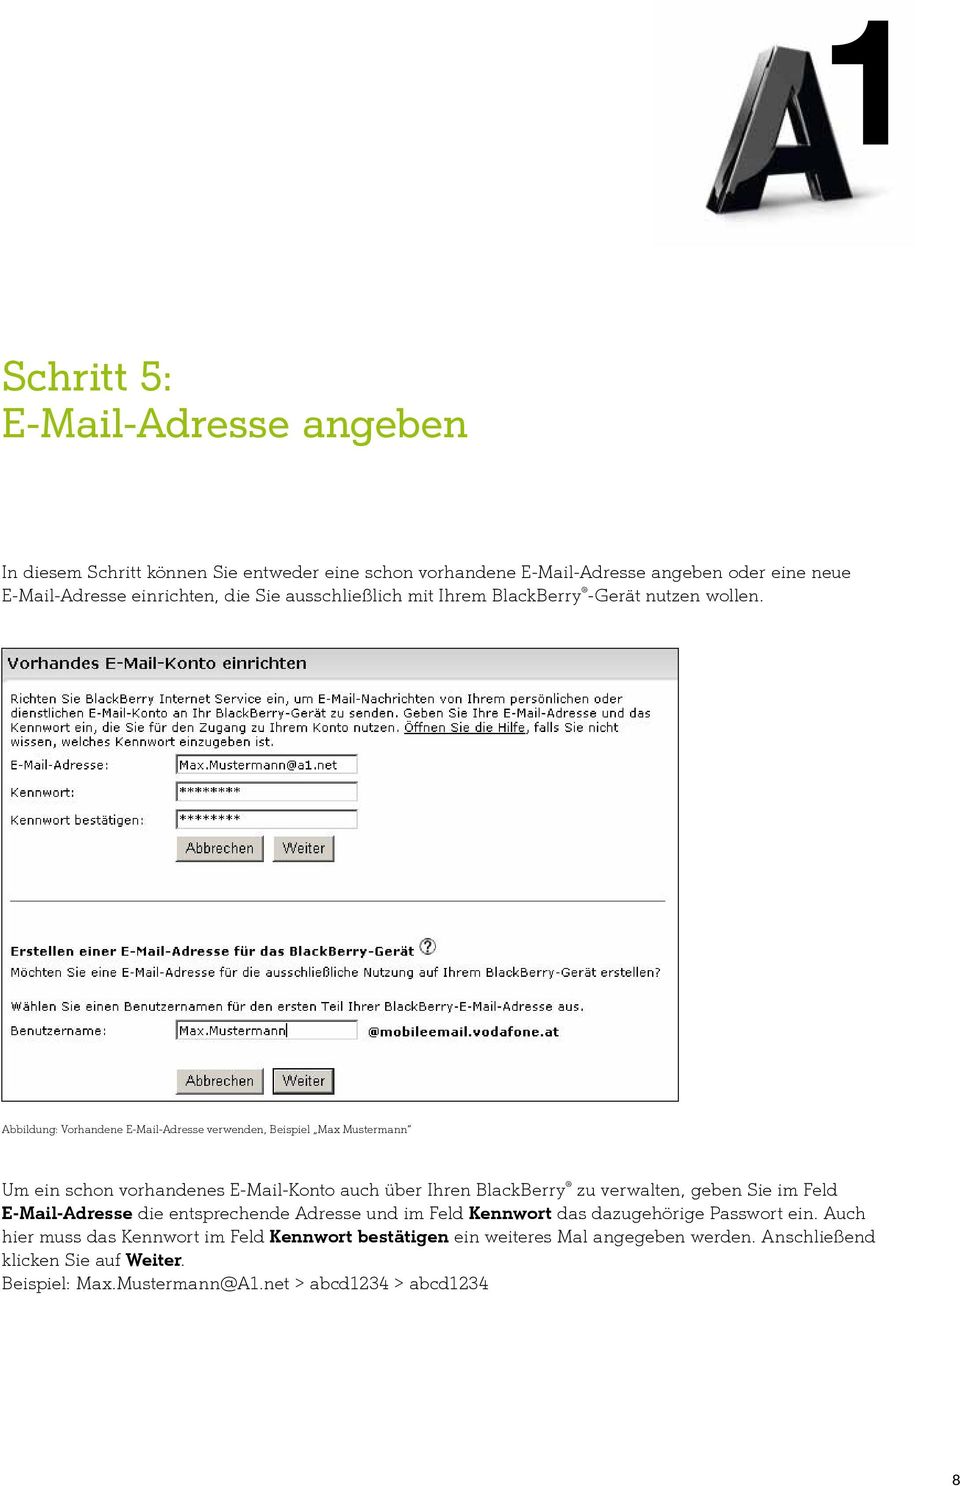 Abbildung: Vorhandene E-Mail-Adresse verwenden, Beispiel Max Mustermann Um ein schon vorhandenes E-Mail-Konto auch über Ihren BlackBerry zu verwalten, geben Sie im